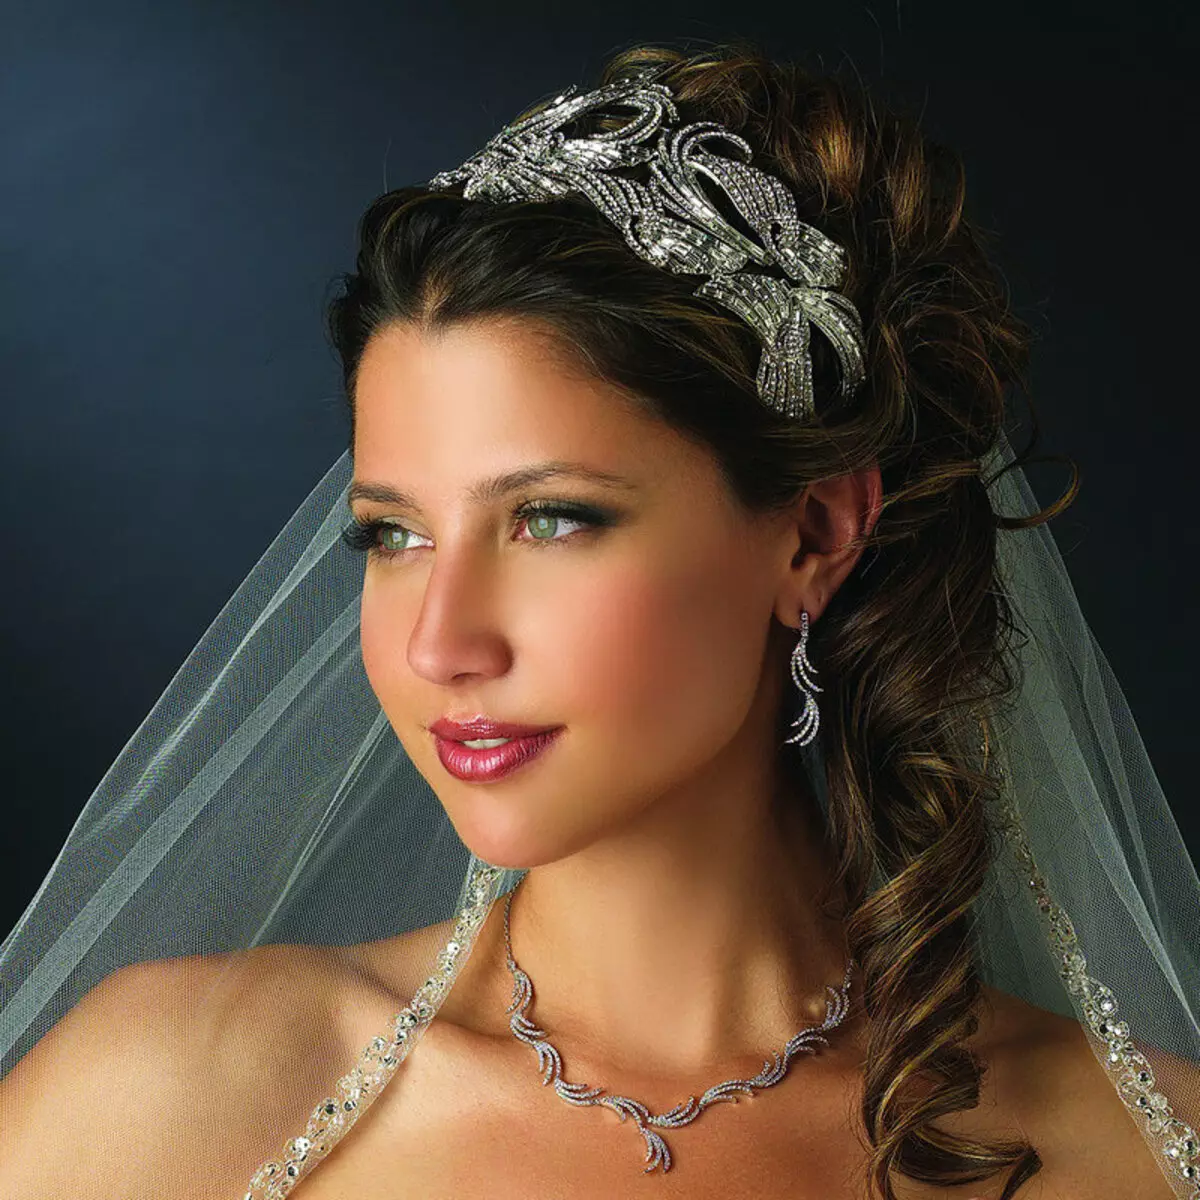 Vjenčanje frizure s diadhem i Fata (54 fotografije): Visoki styling s cvijećem za vjenčanje za nevjestu i druge opcije u fazama 7966_48